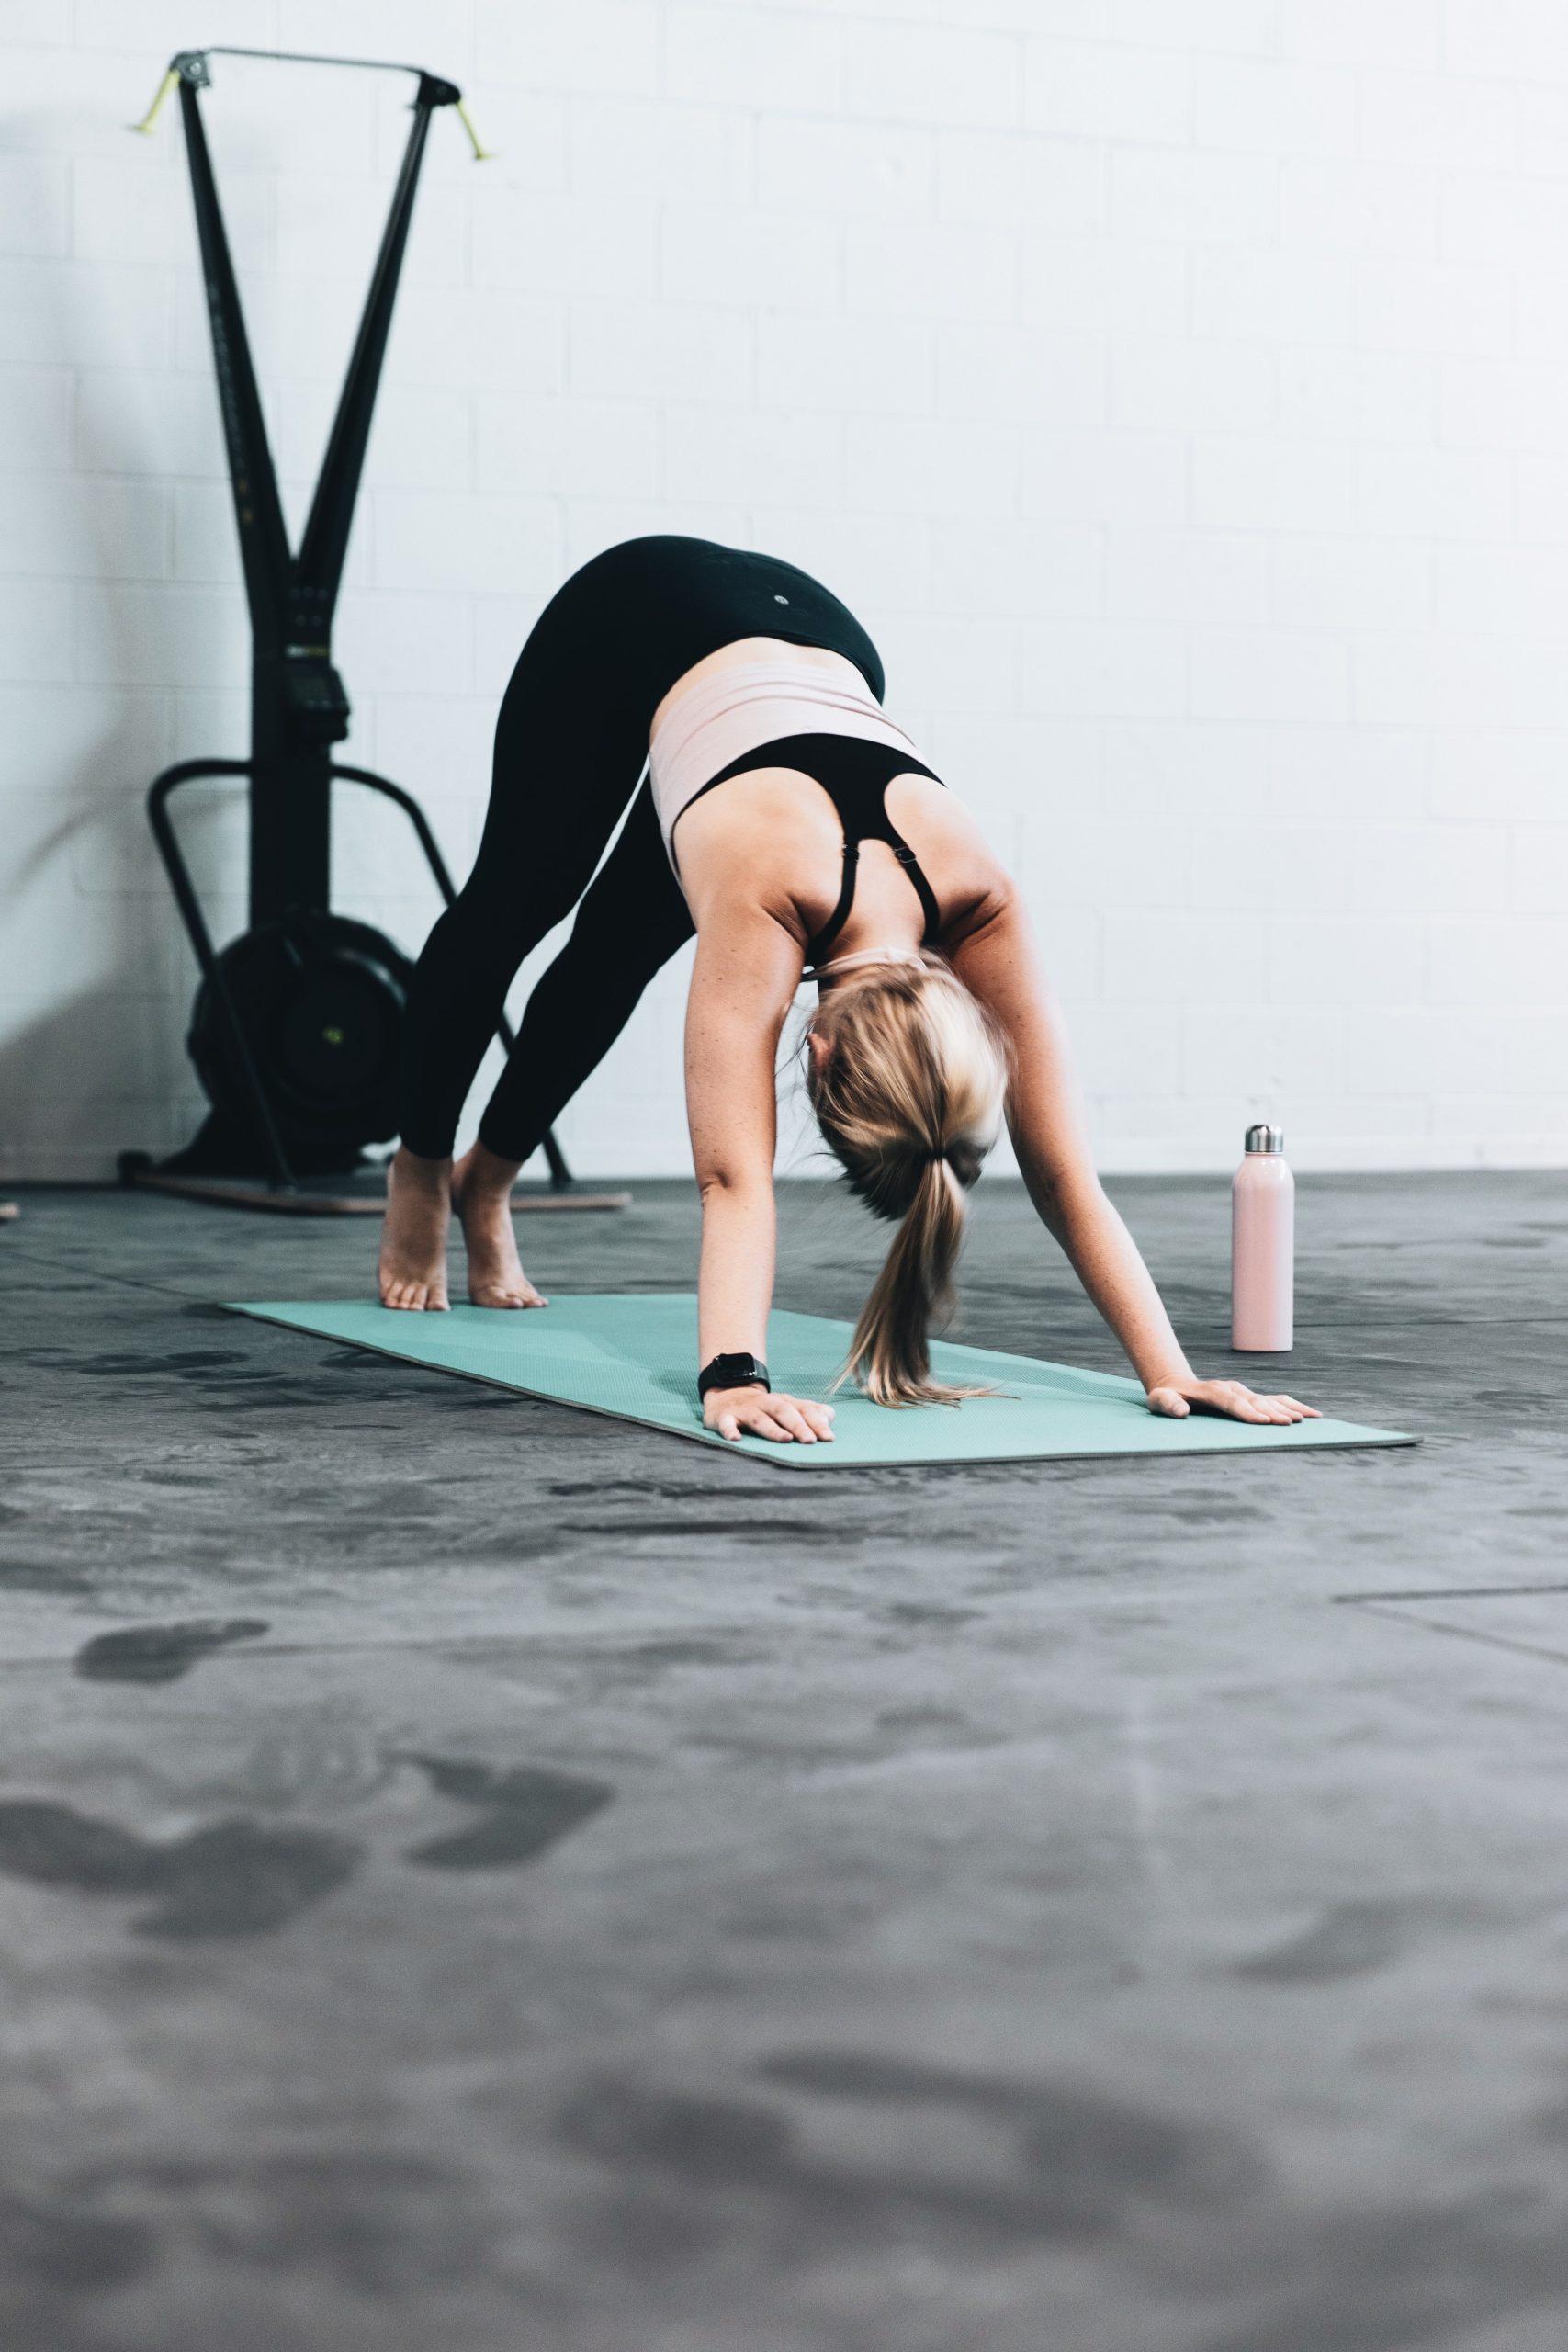 Yoga giúp cải thiện sức mạnh thể chất và sự cân bằng, thư giãn đầu óc, giảm căng thẳng, tăng endorphin giúp cải thiện tâm trạng và củng cố xương và cơ bắp. (Nguồn: Internet)